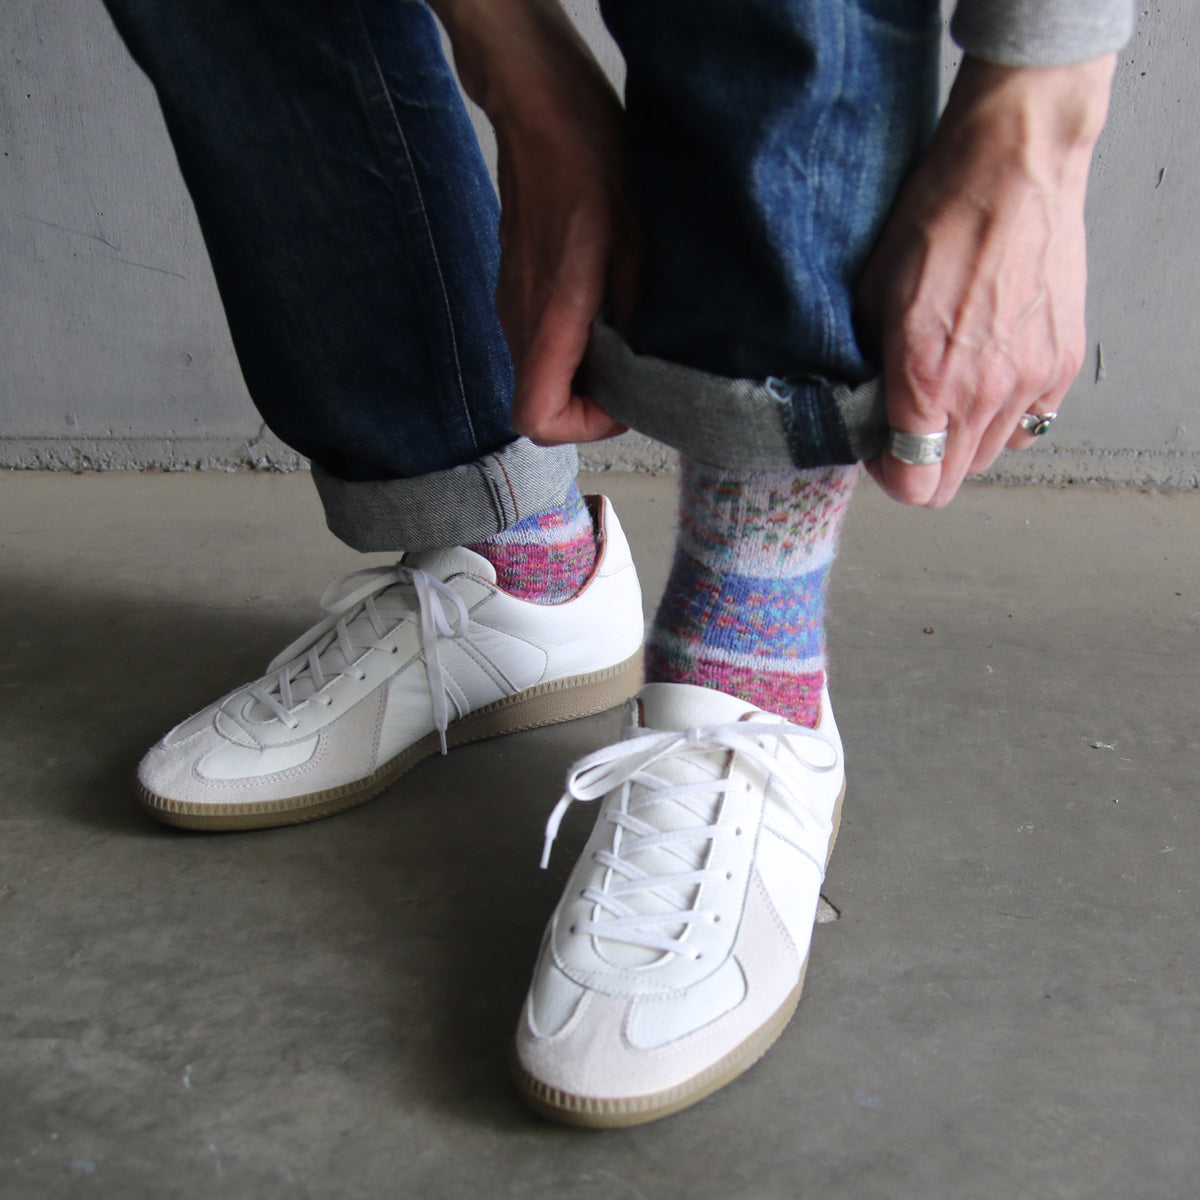 ラナート (LANART) 米国製ベビーアルパカソックス靴下 Artistic Baby Alpaca Socks[MONET/CANDY]